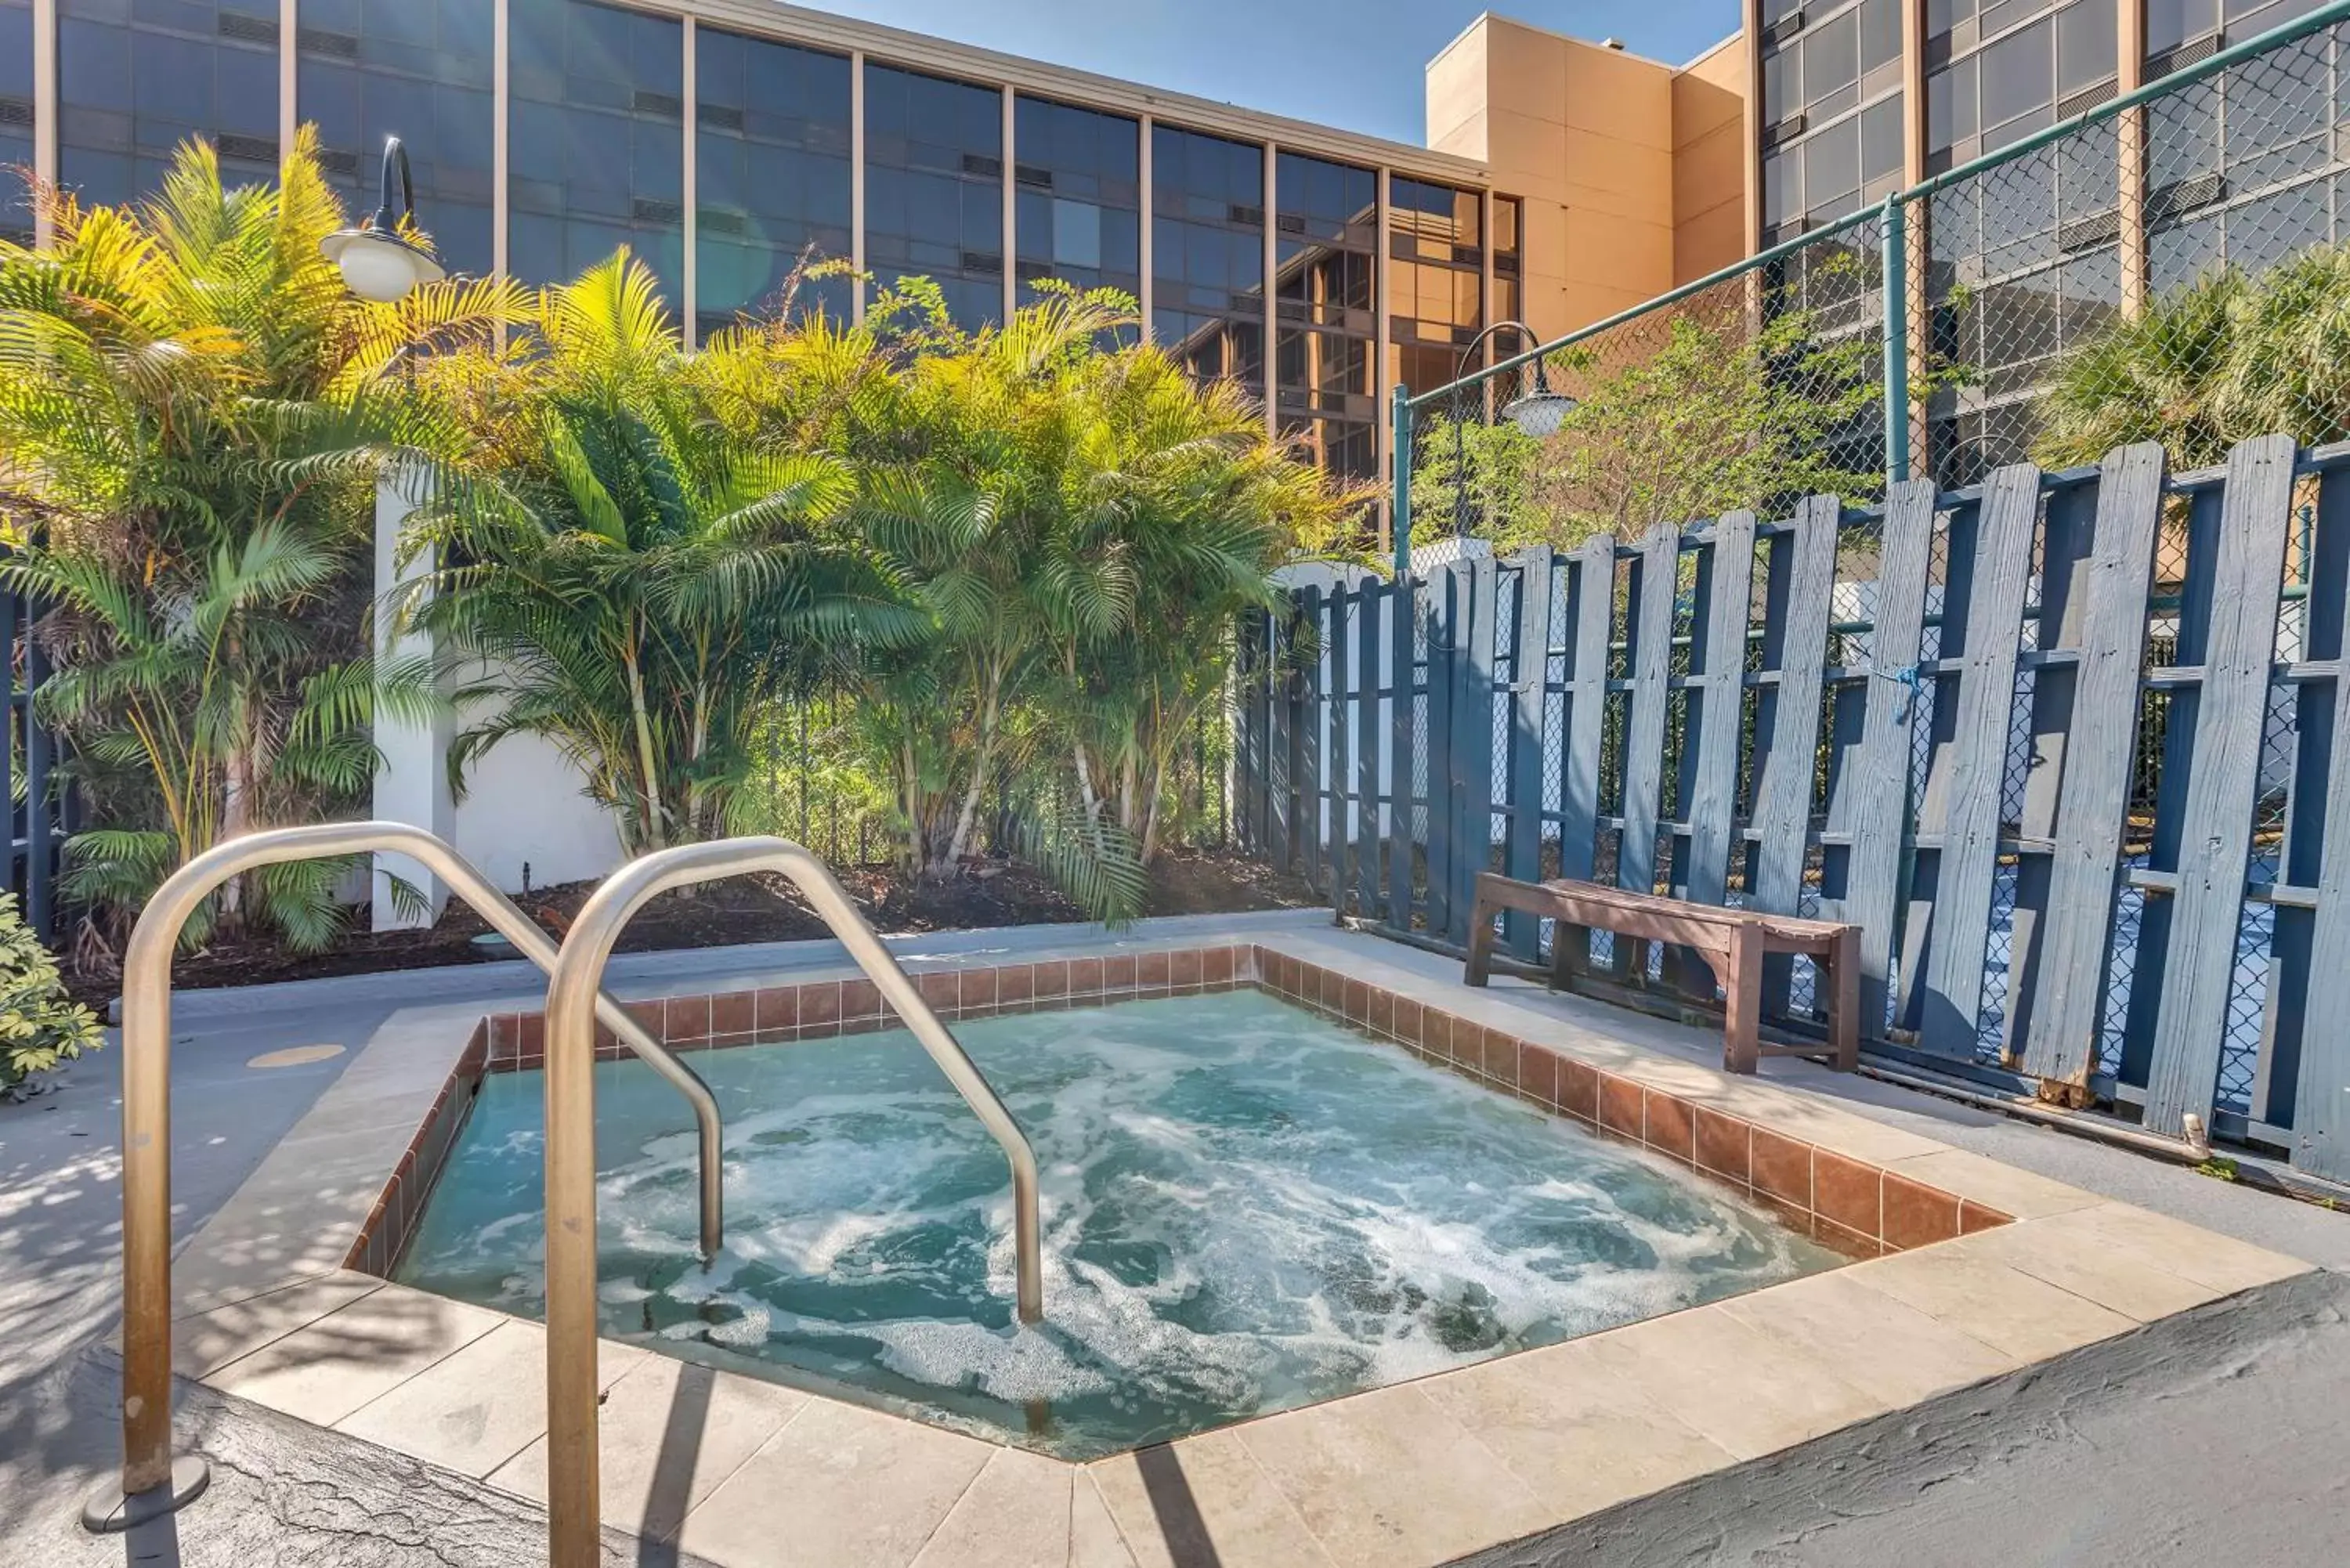 Hot Tub, Swimming Pool in Best Western Orlando Gateway Hotel